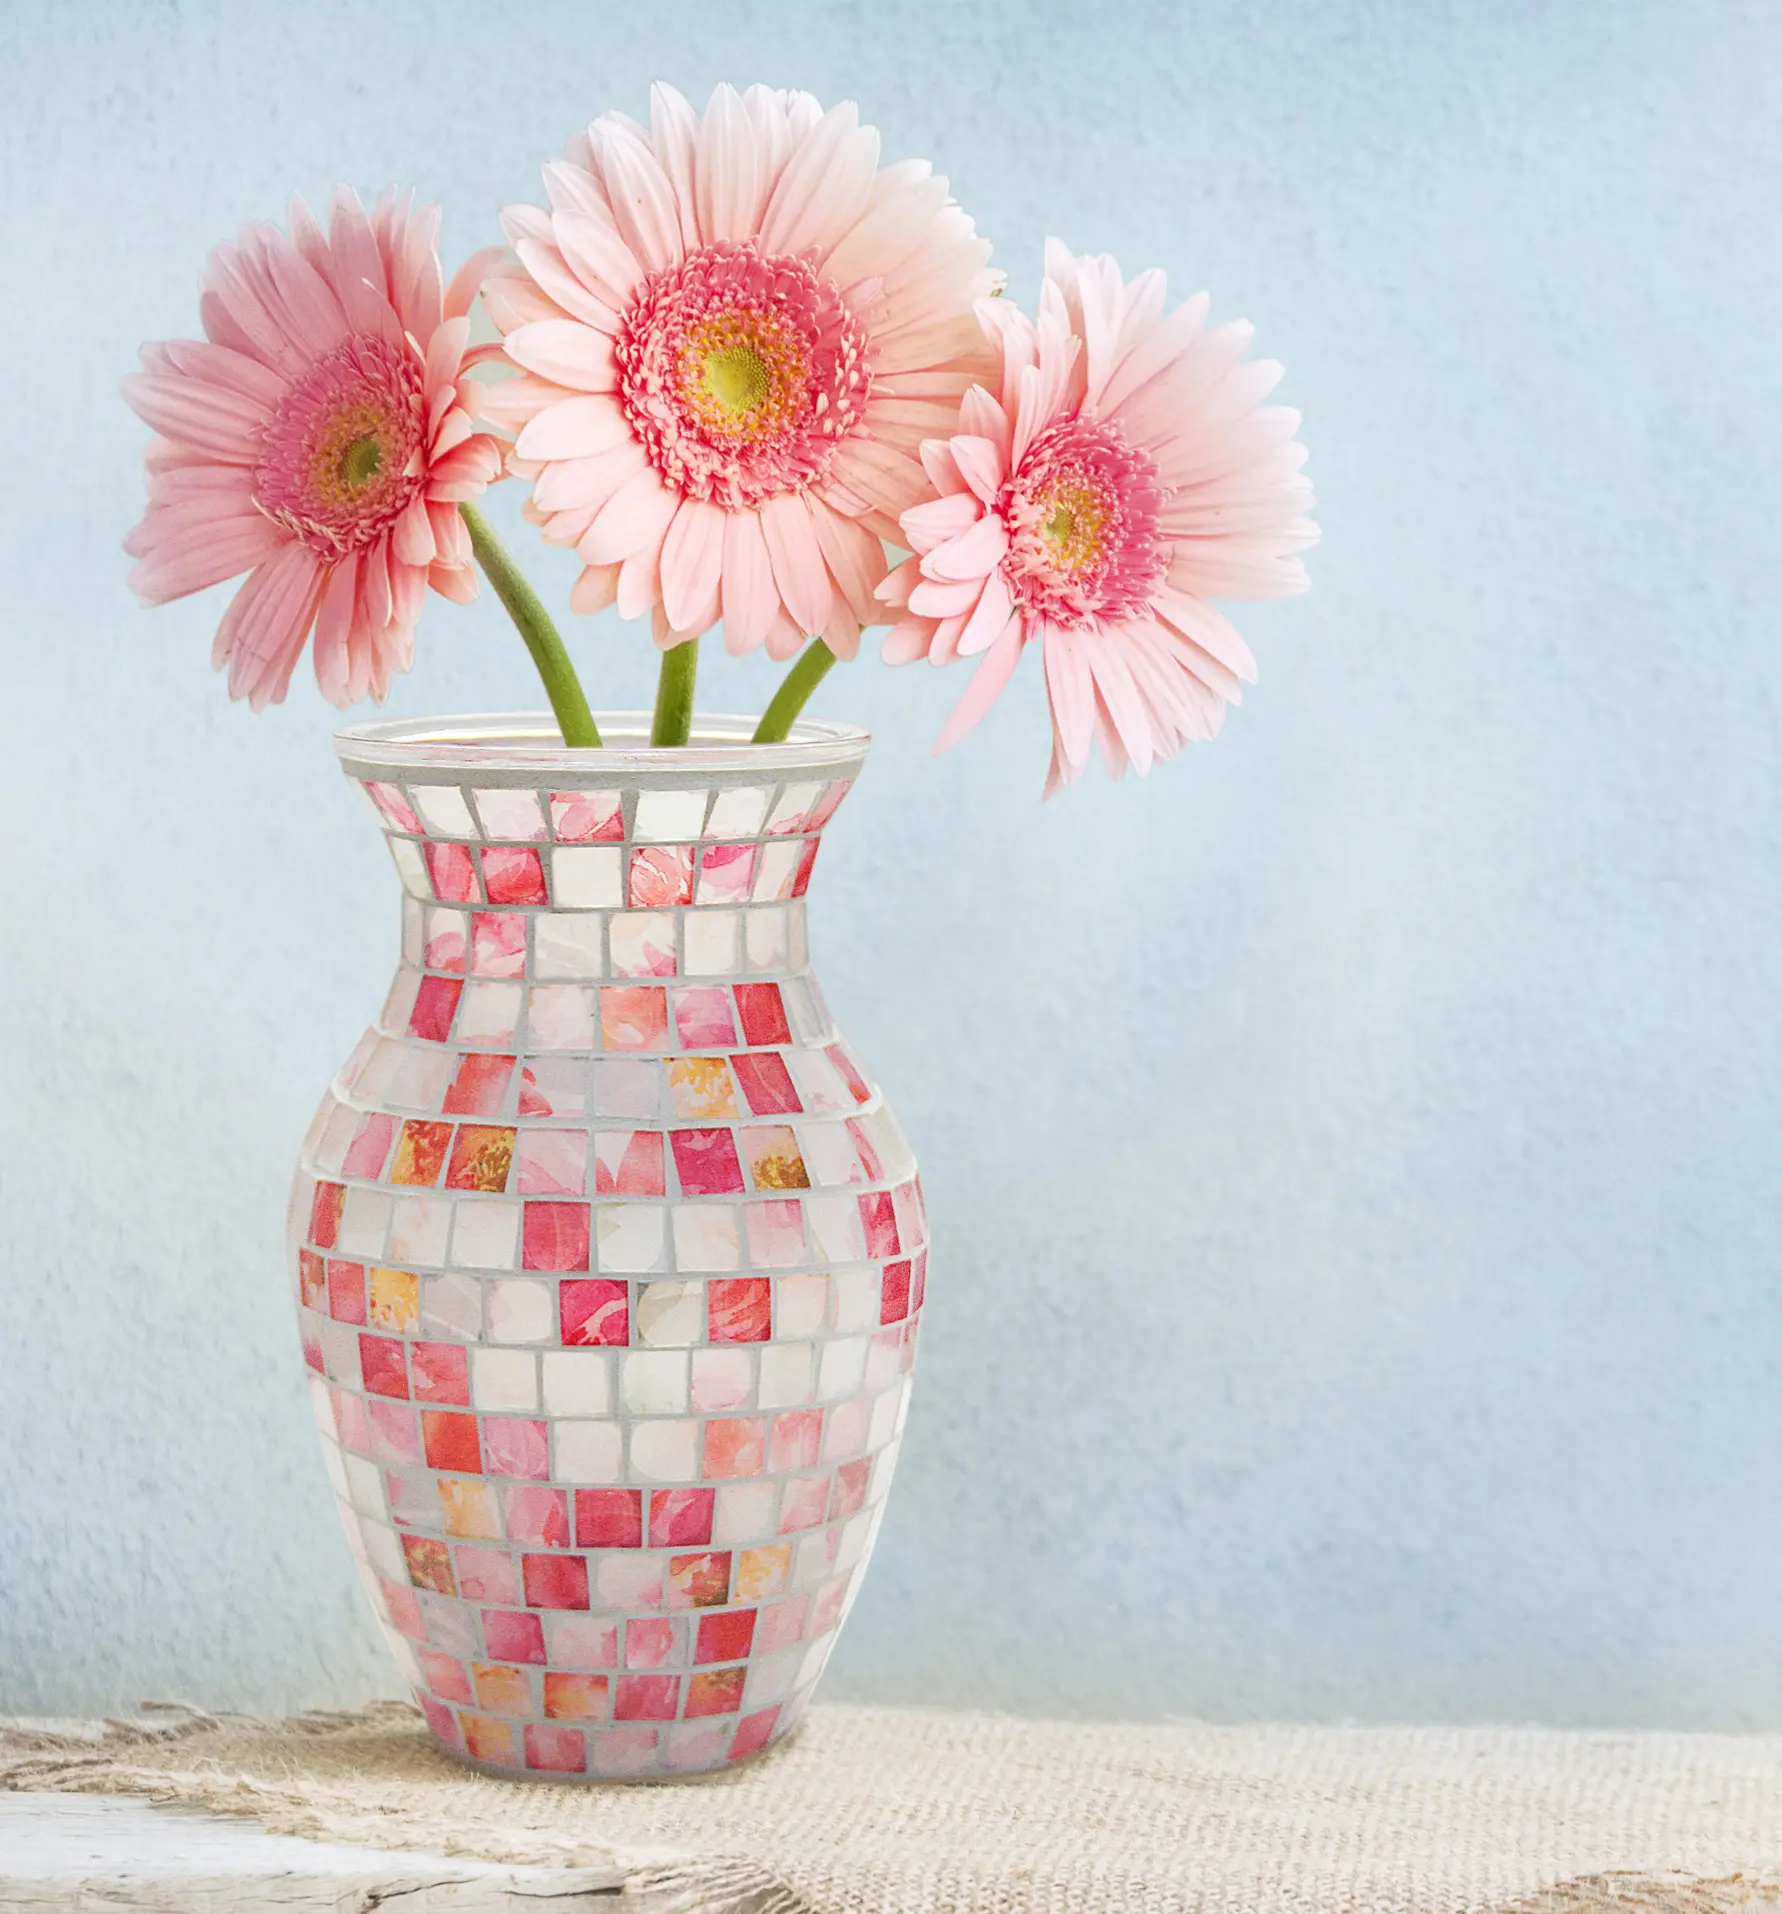 Vaso de vidro novo estilo boêmio, nórdico, decoração de flores, puro, feito à mão, multicolor, lindo, vaso de vidro